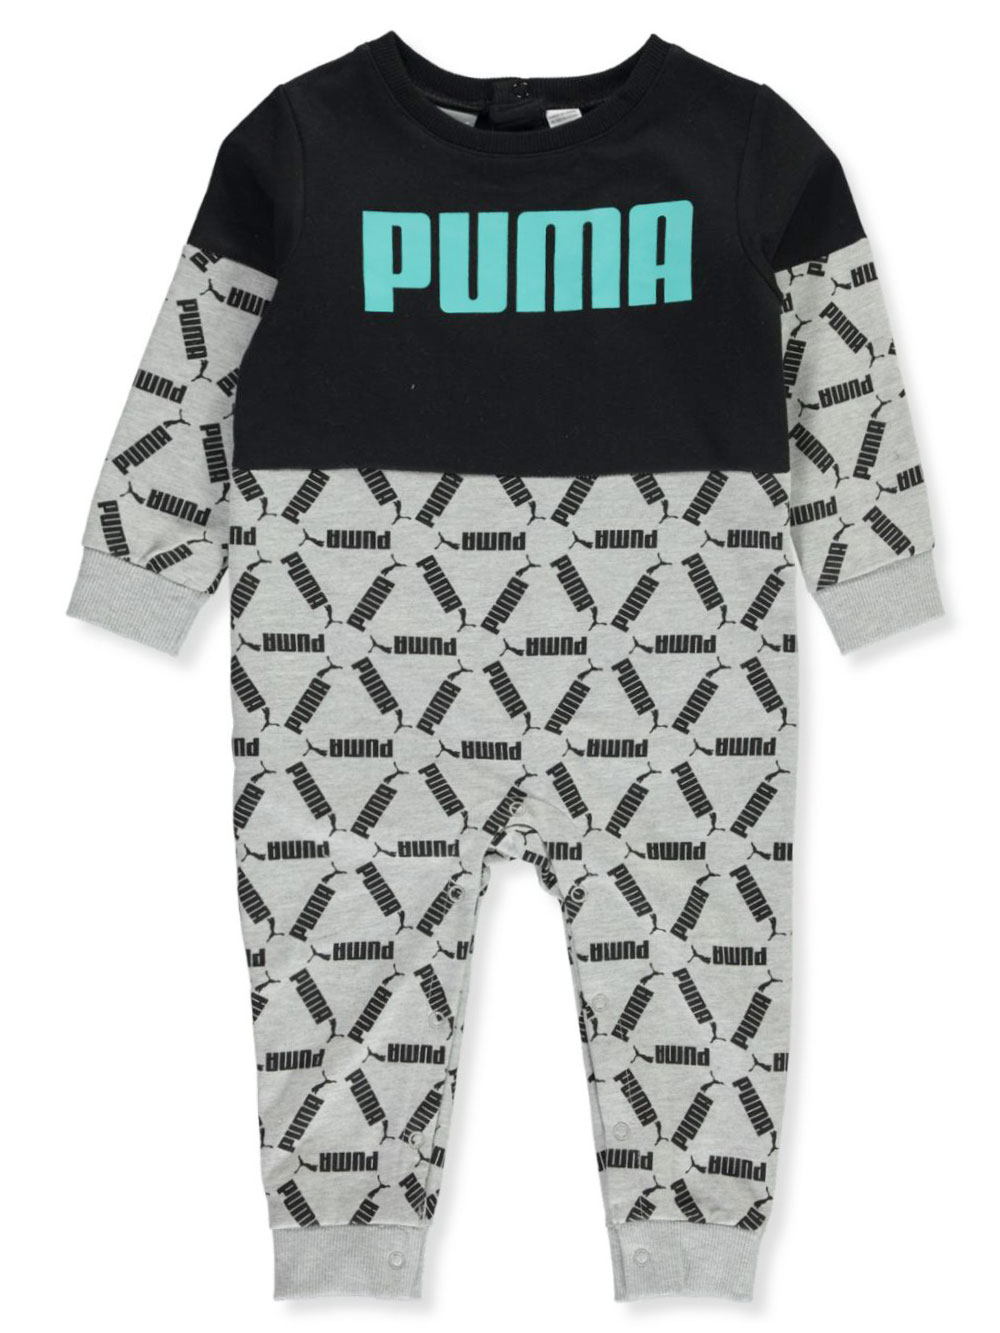 puma baby boy clothes